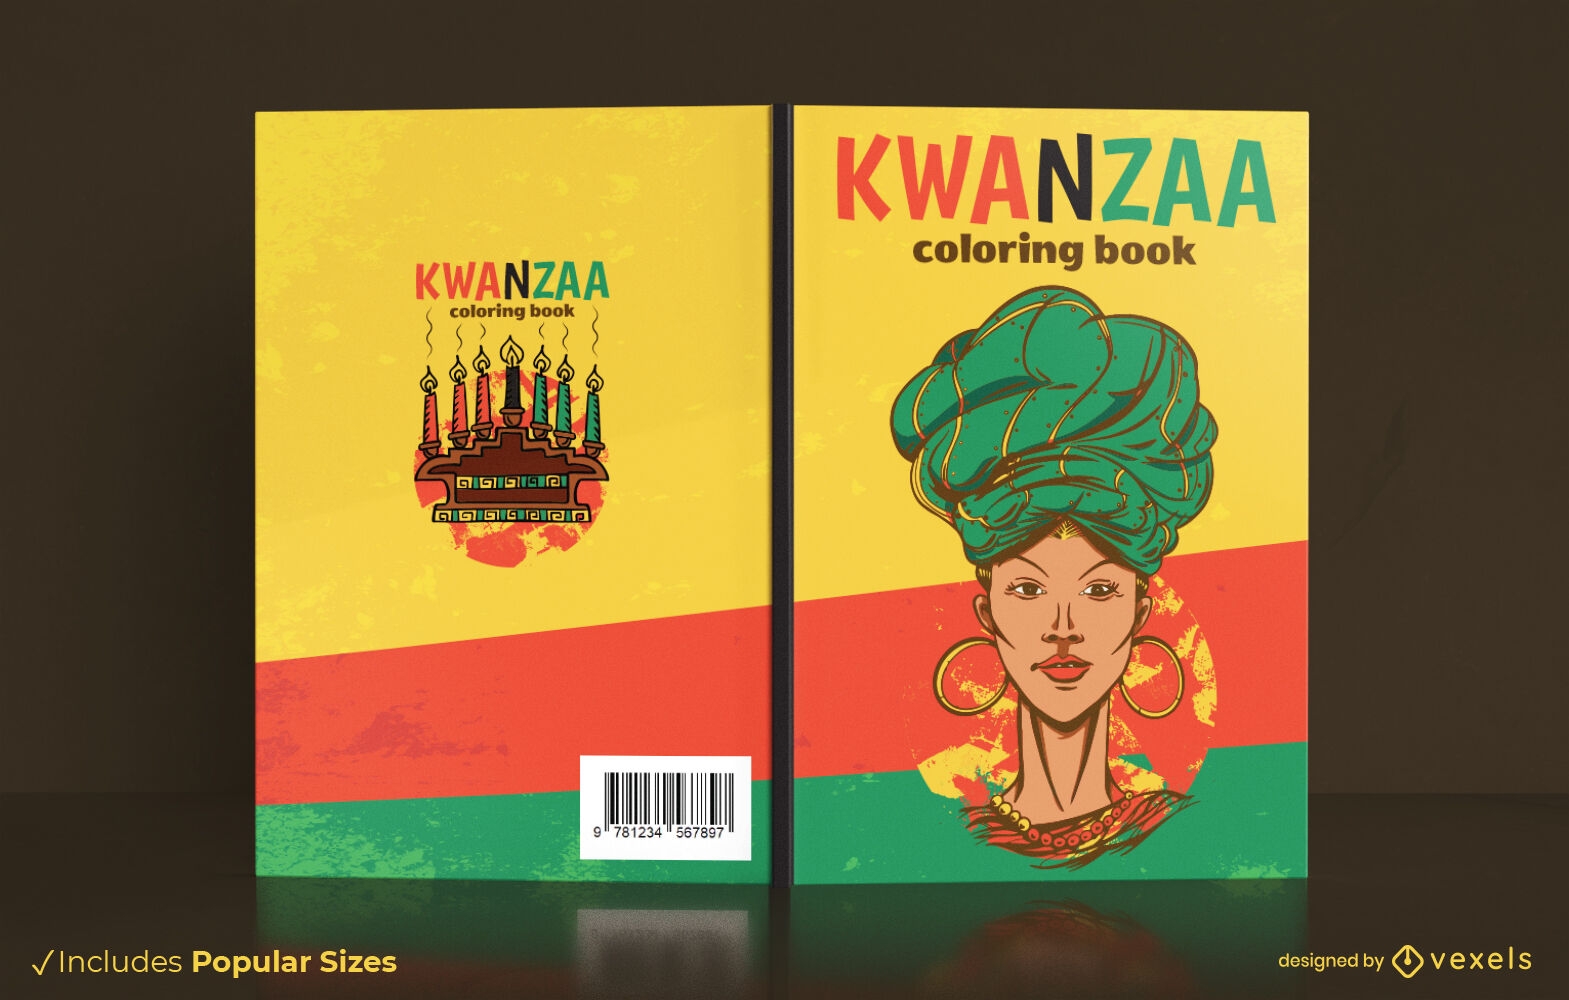 Kwanzaa coloring book cover design